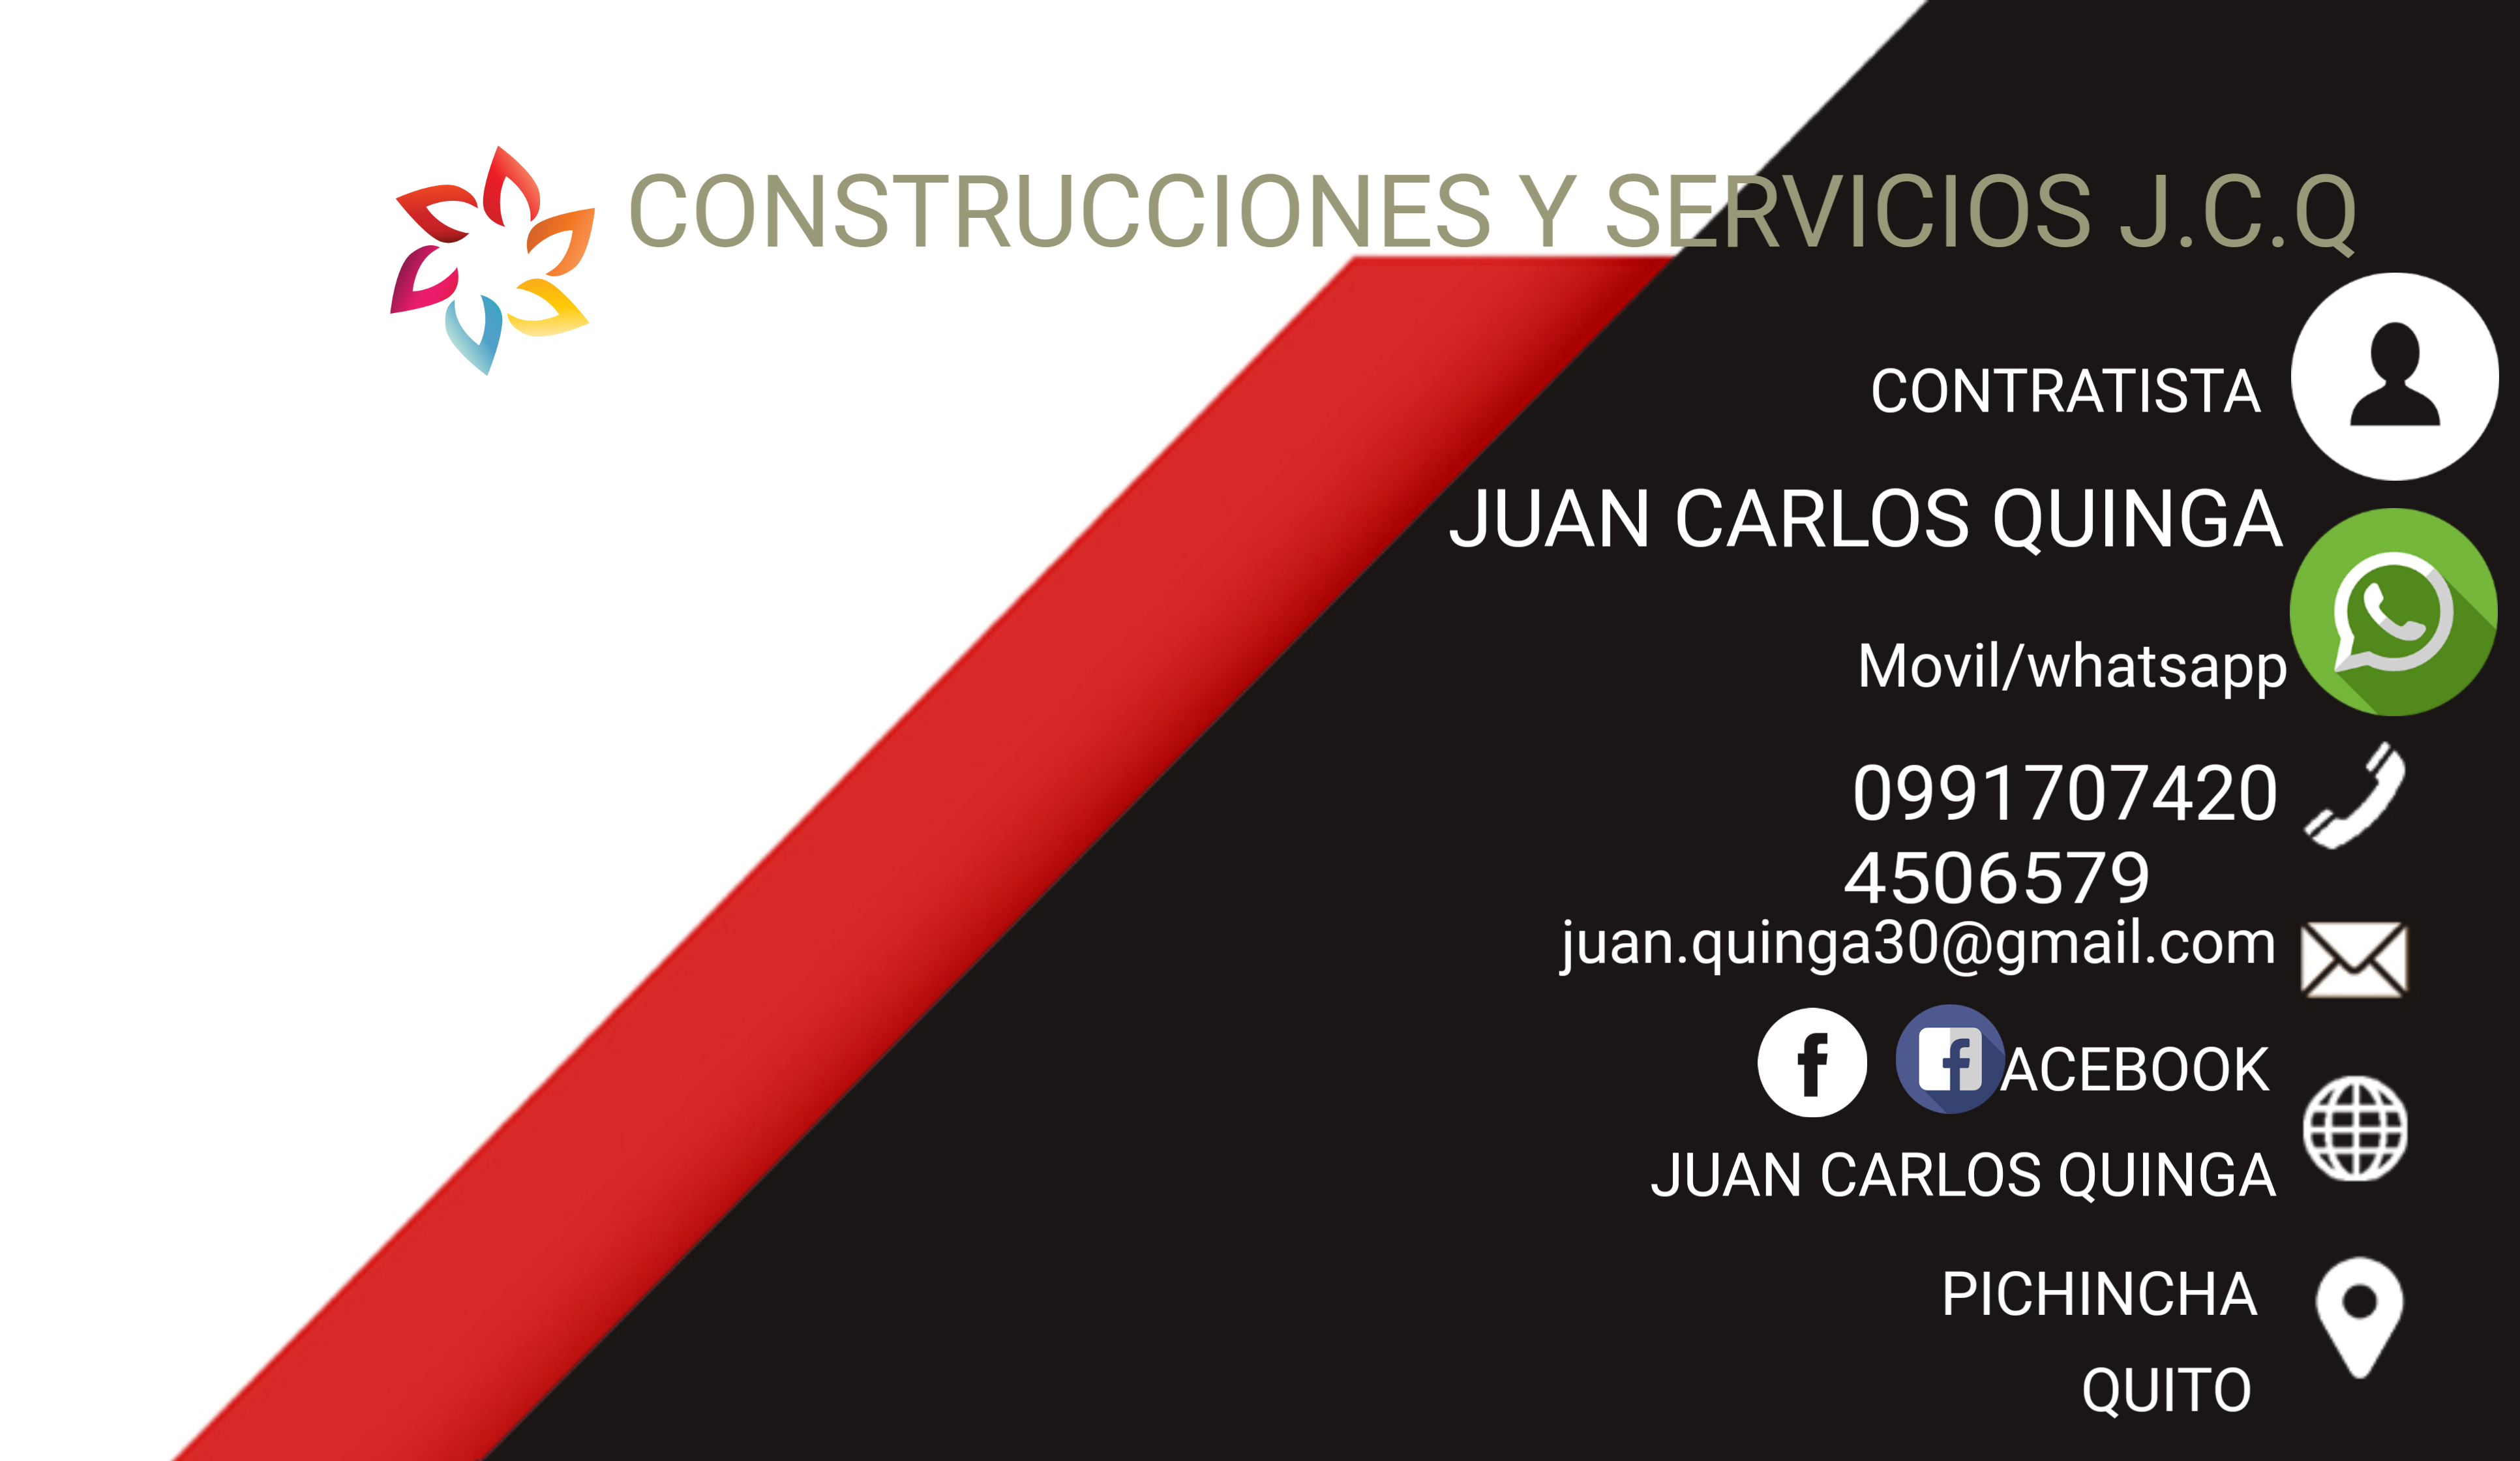 CONSTRUCCIONES Y SERVICIOS J.C.Q